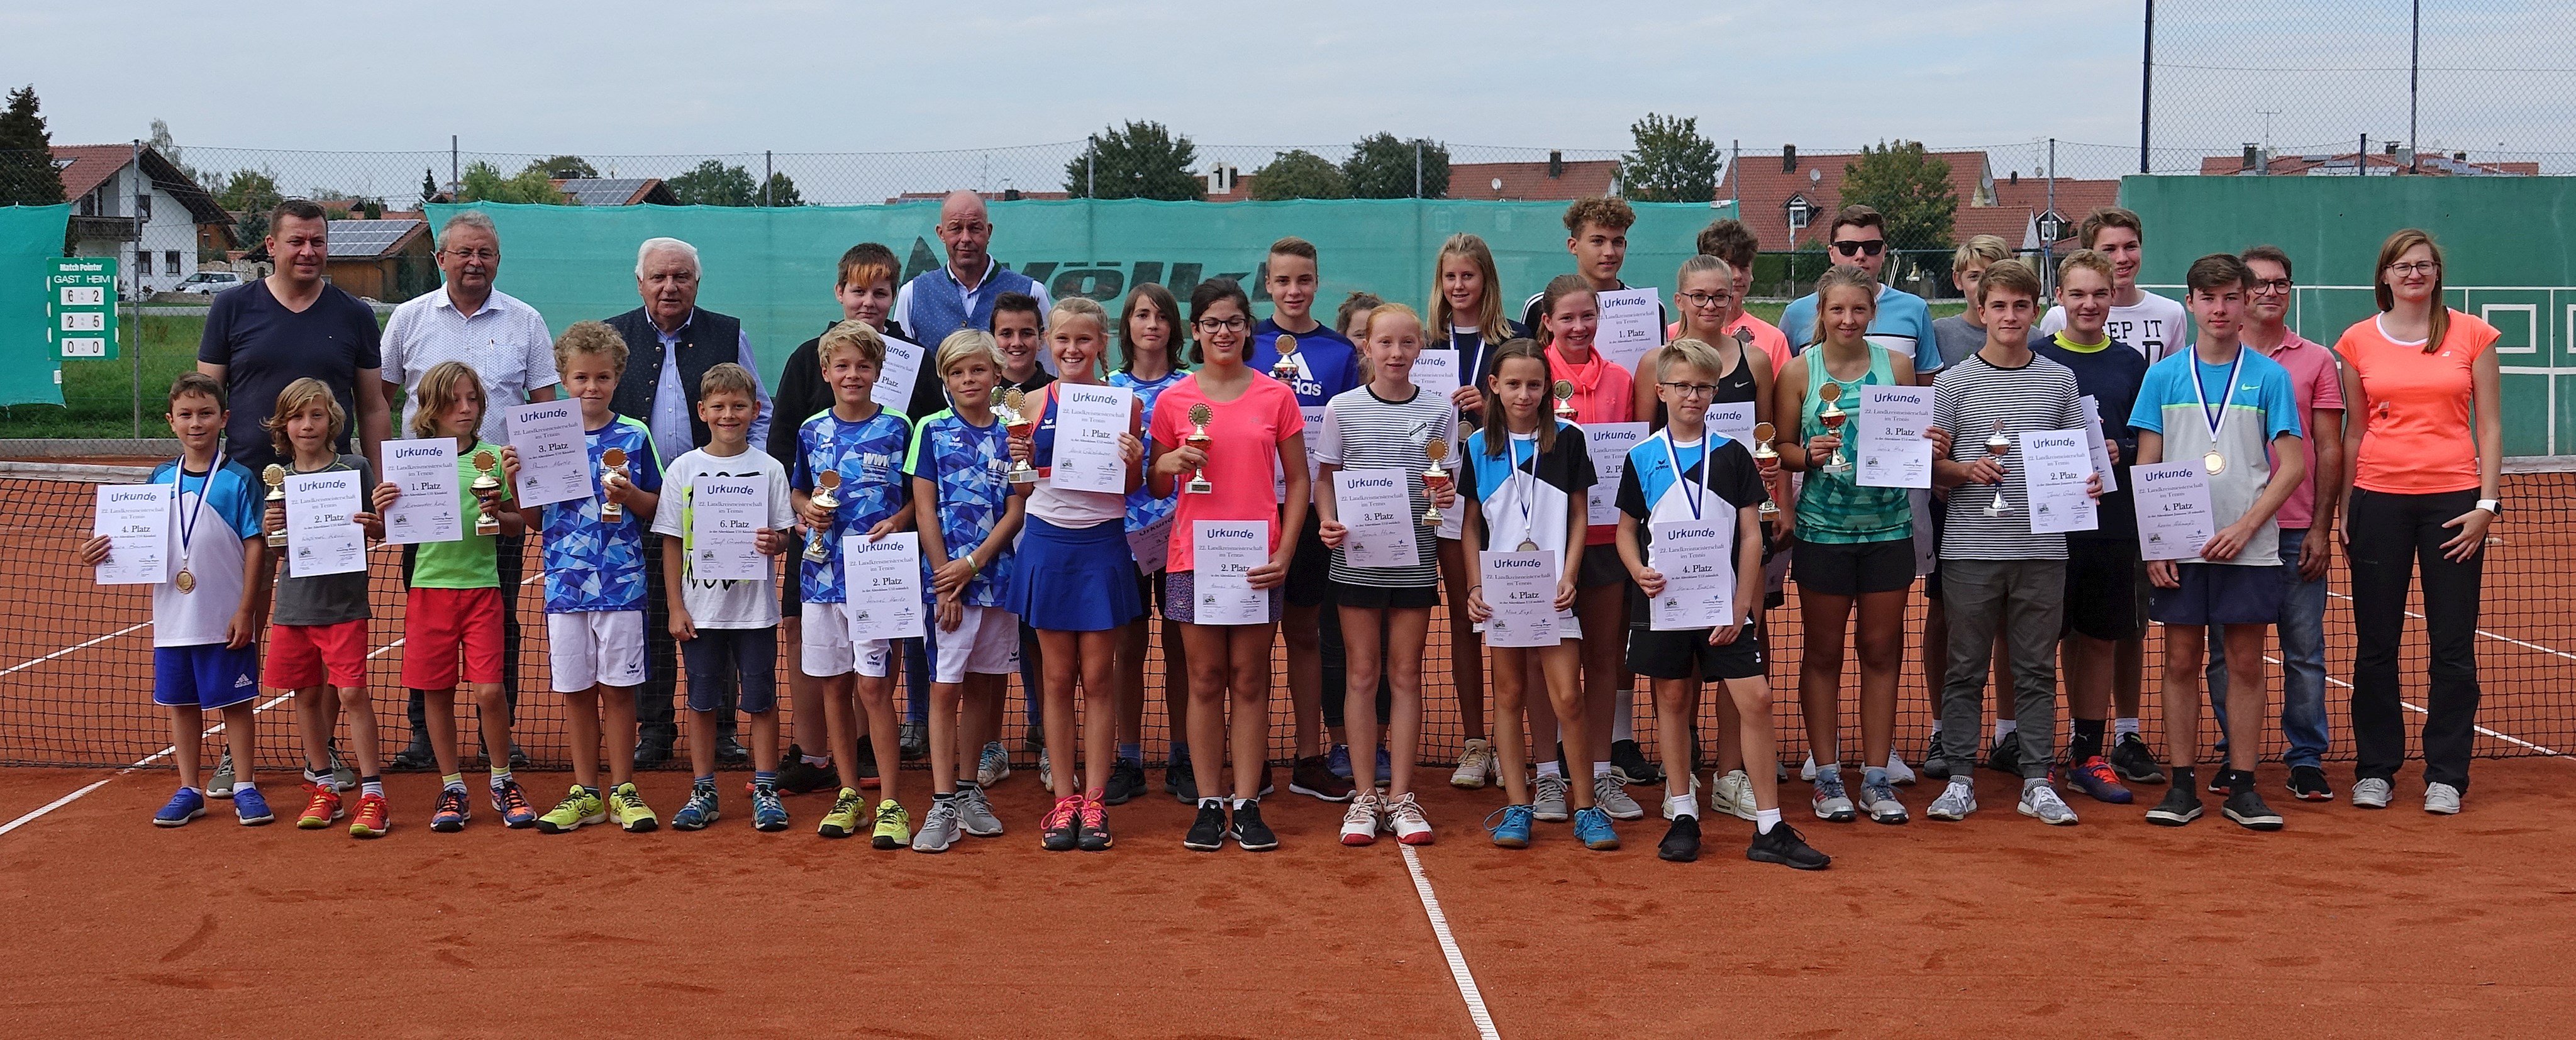 Landkreismeisterschaften der Jugend im Tennis ein voller Erfolg